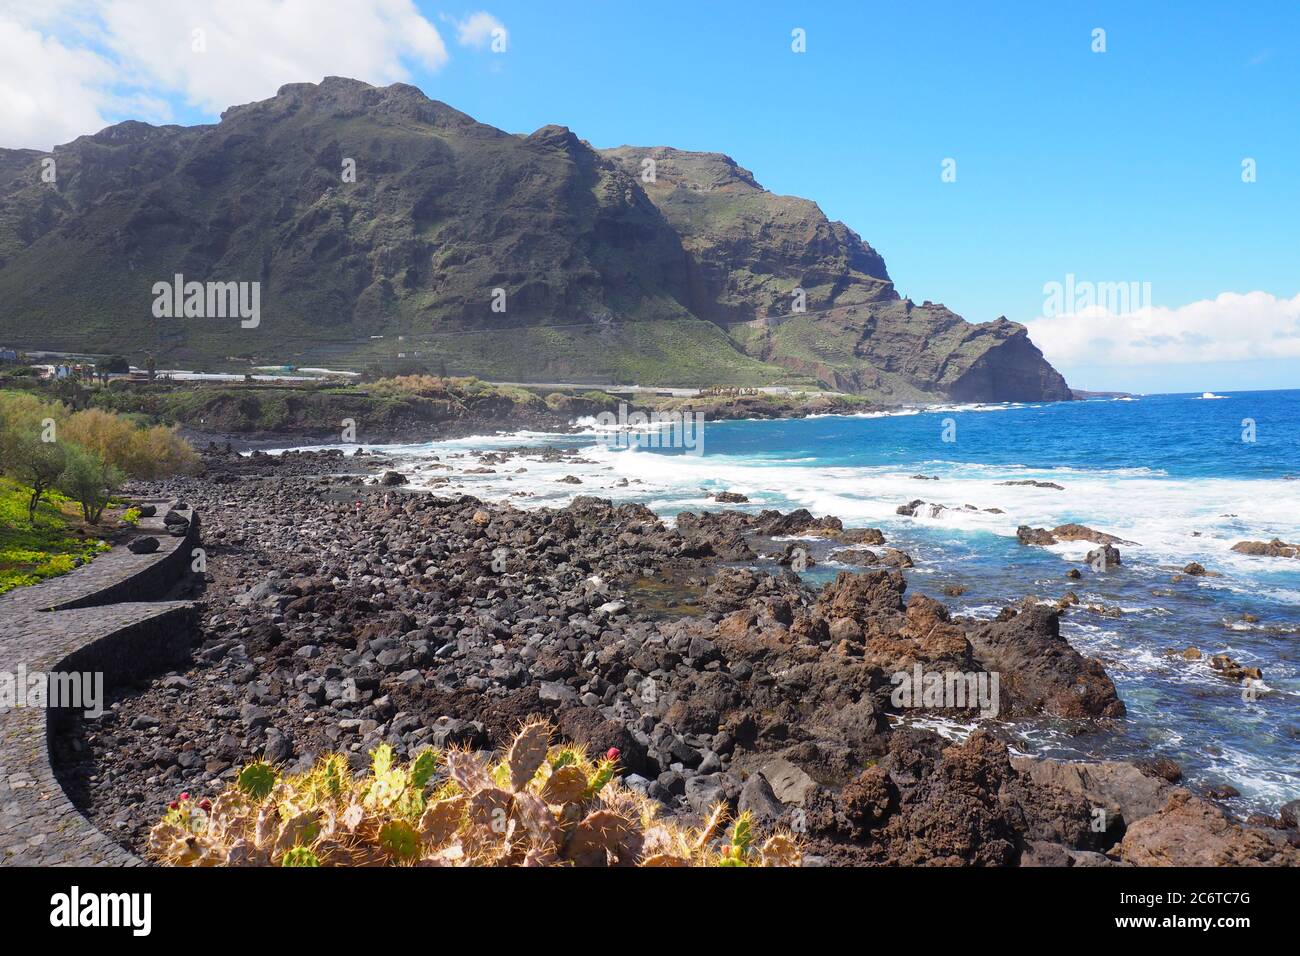 Coastal path, Playa de las Arenas, Buenavista del Norte, Tenerife Stock Photo